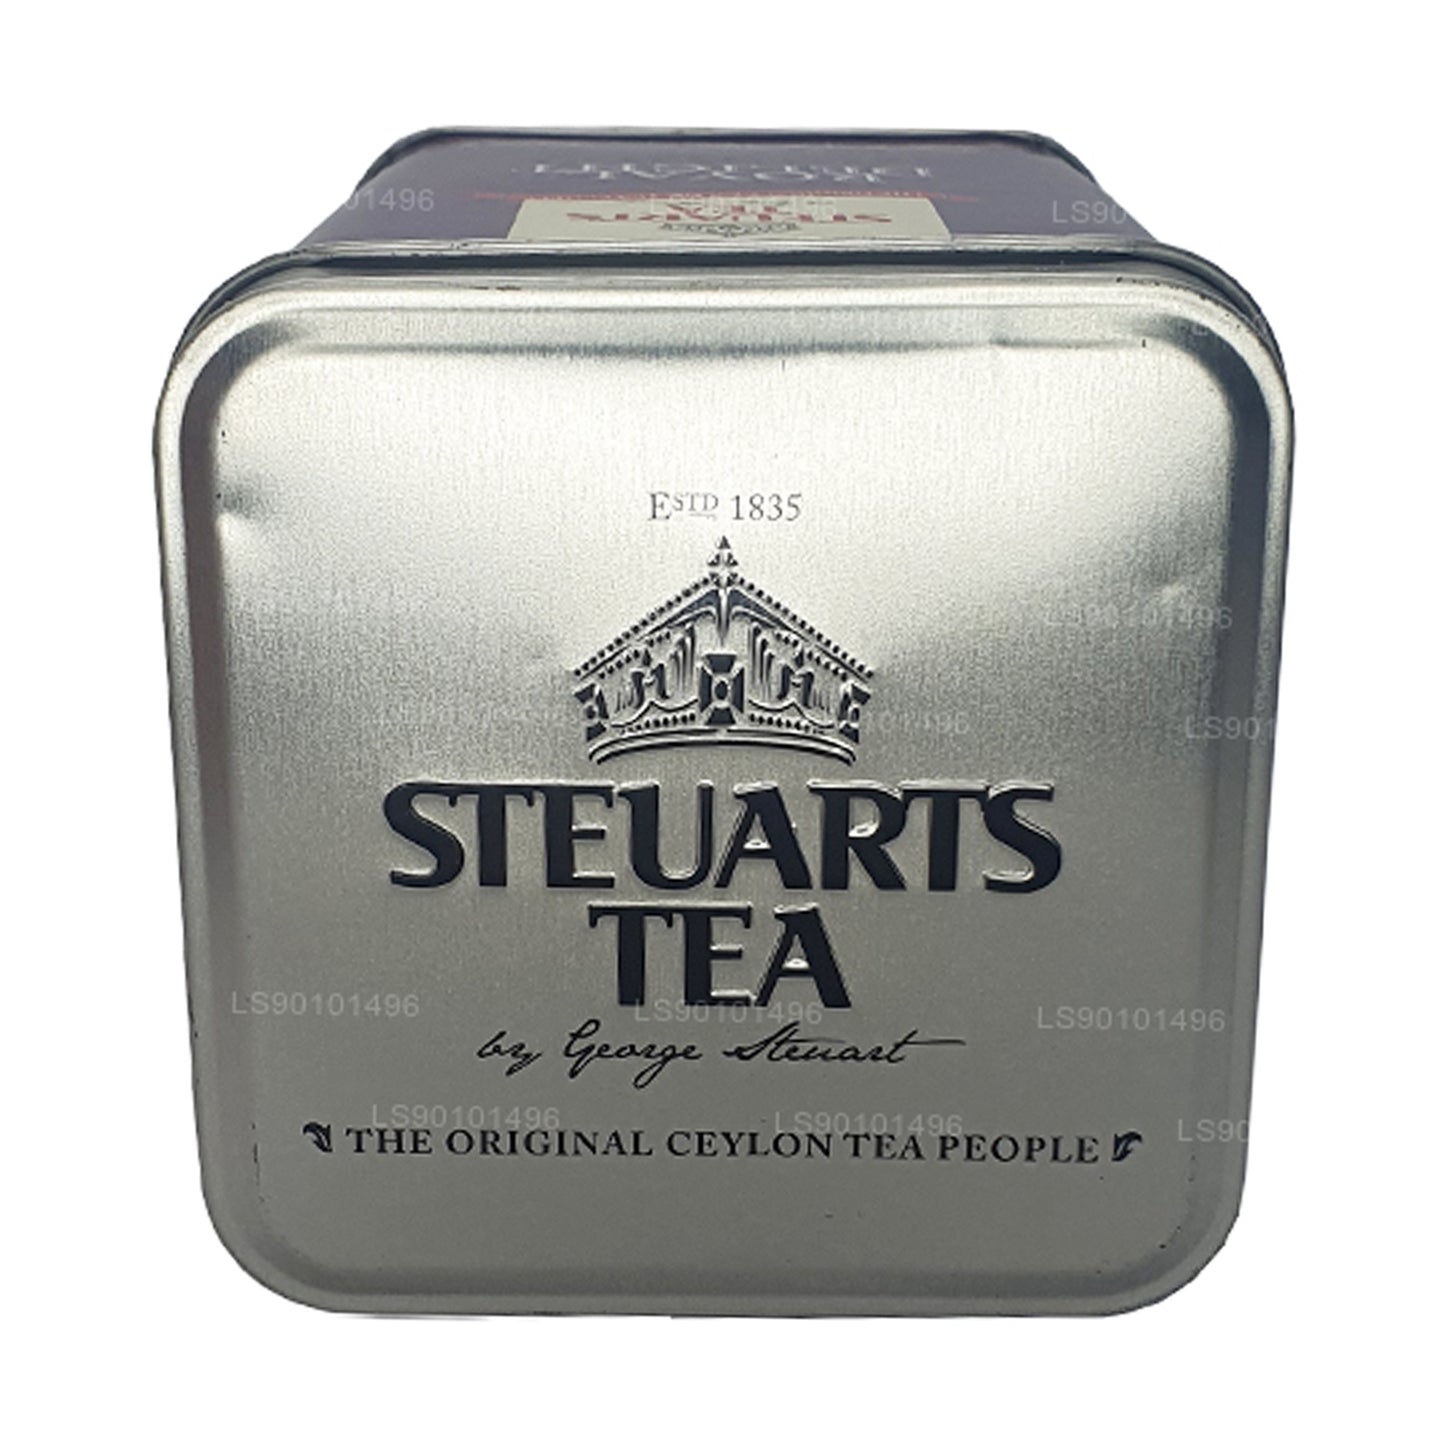 George Steuart Royal Delight Tea (100g) Leaf Tea